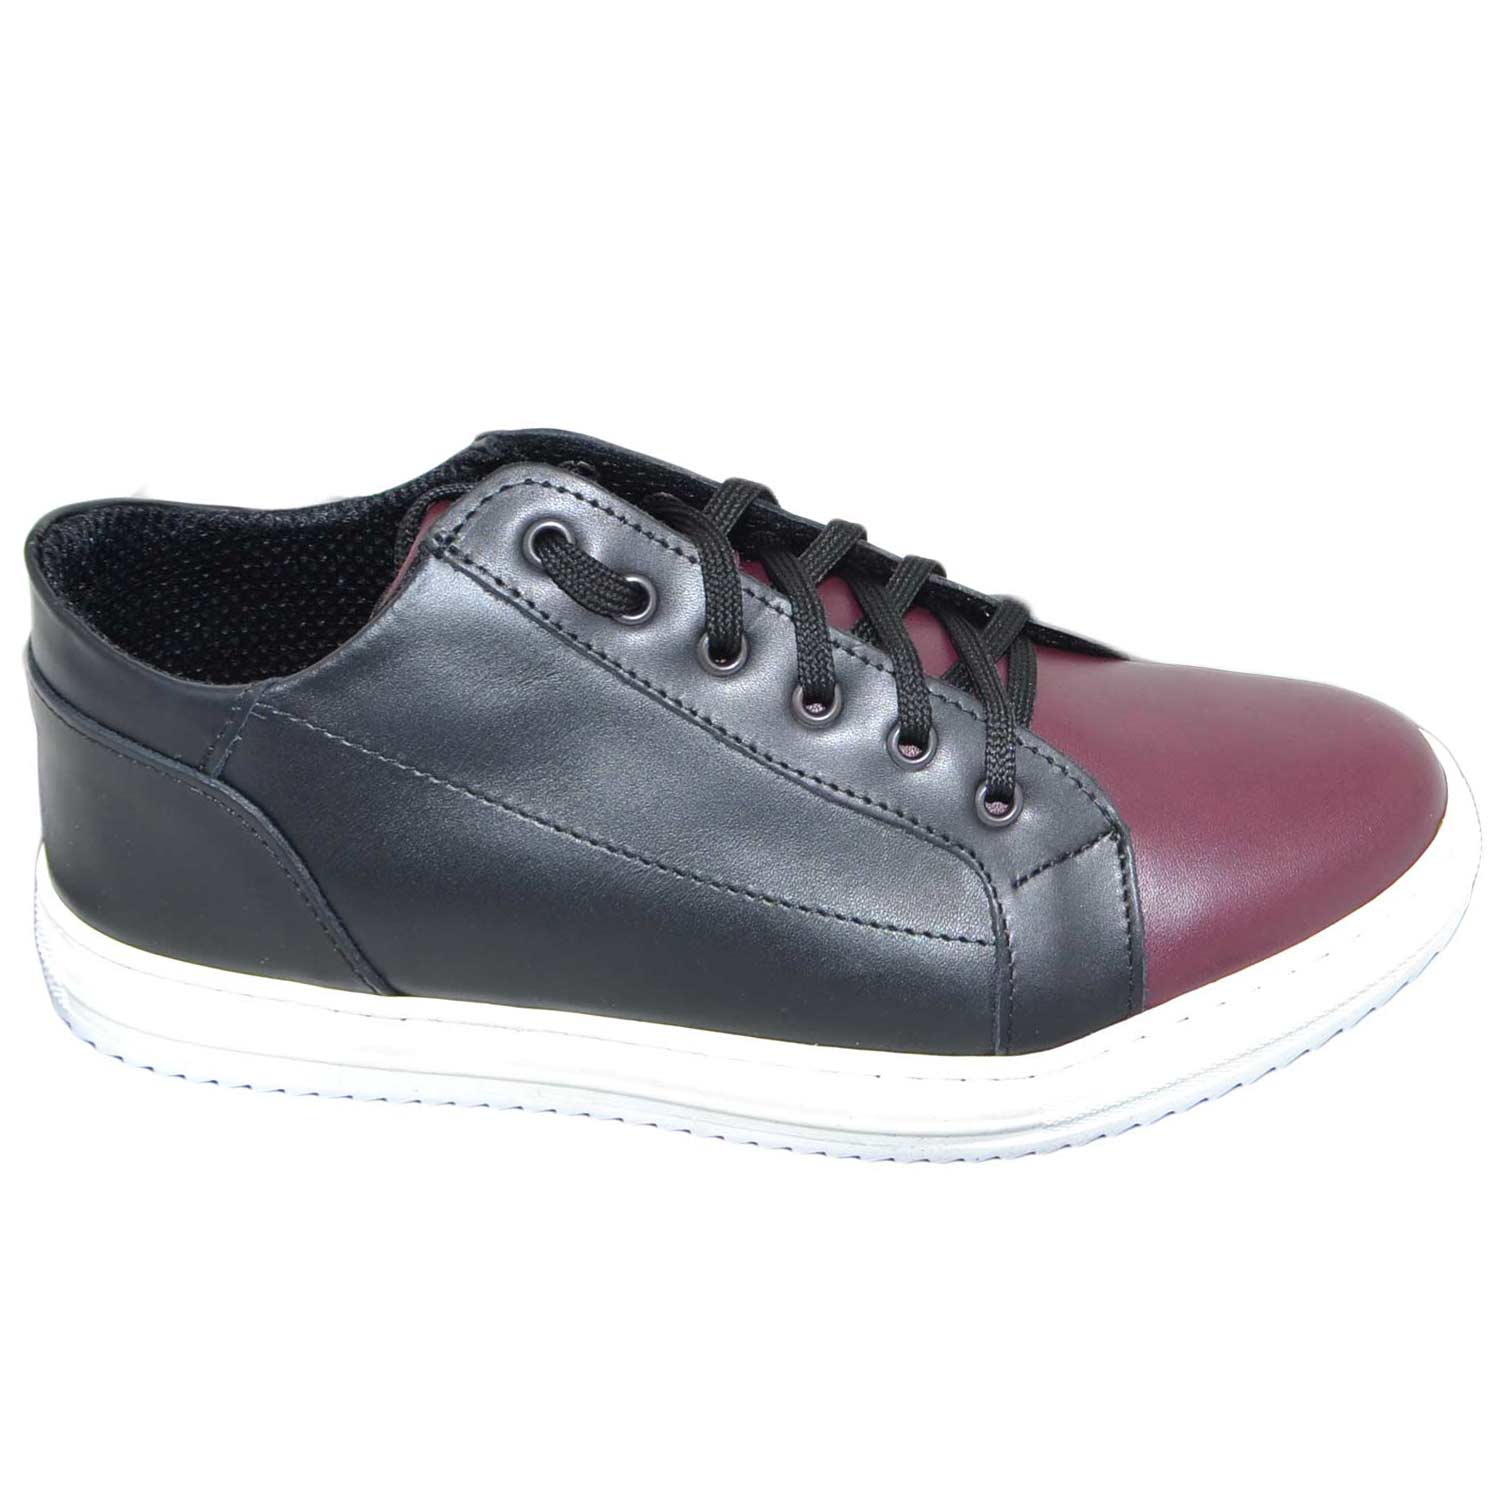 Sneakers bassa uomo art:2384 vera pelle bicolore nero e bordeaux comode moda made in italy.